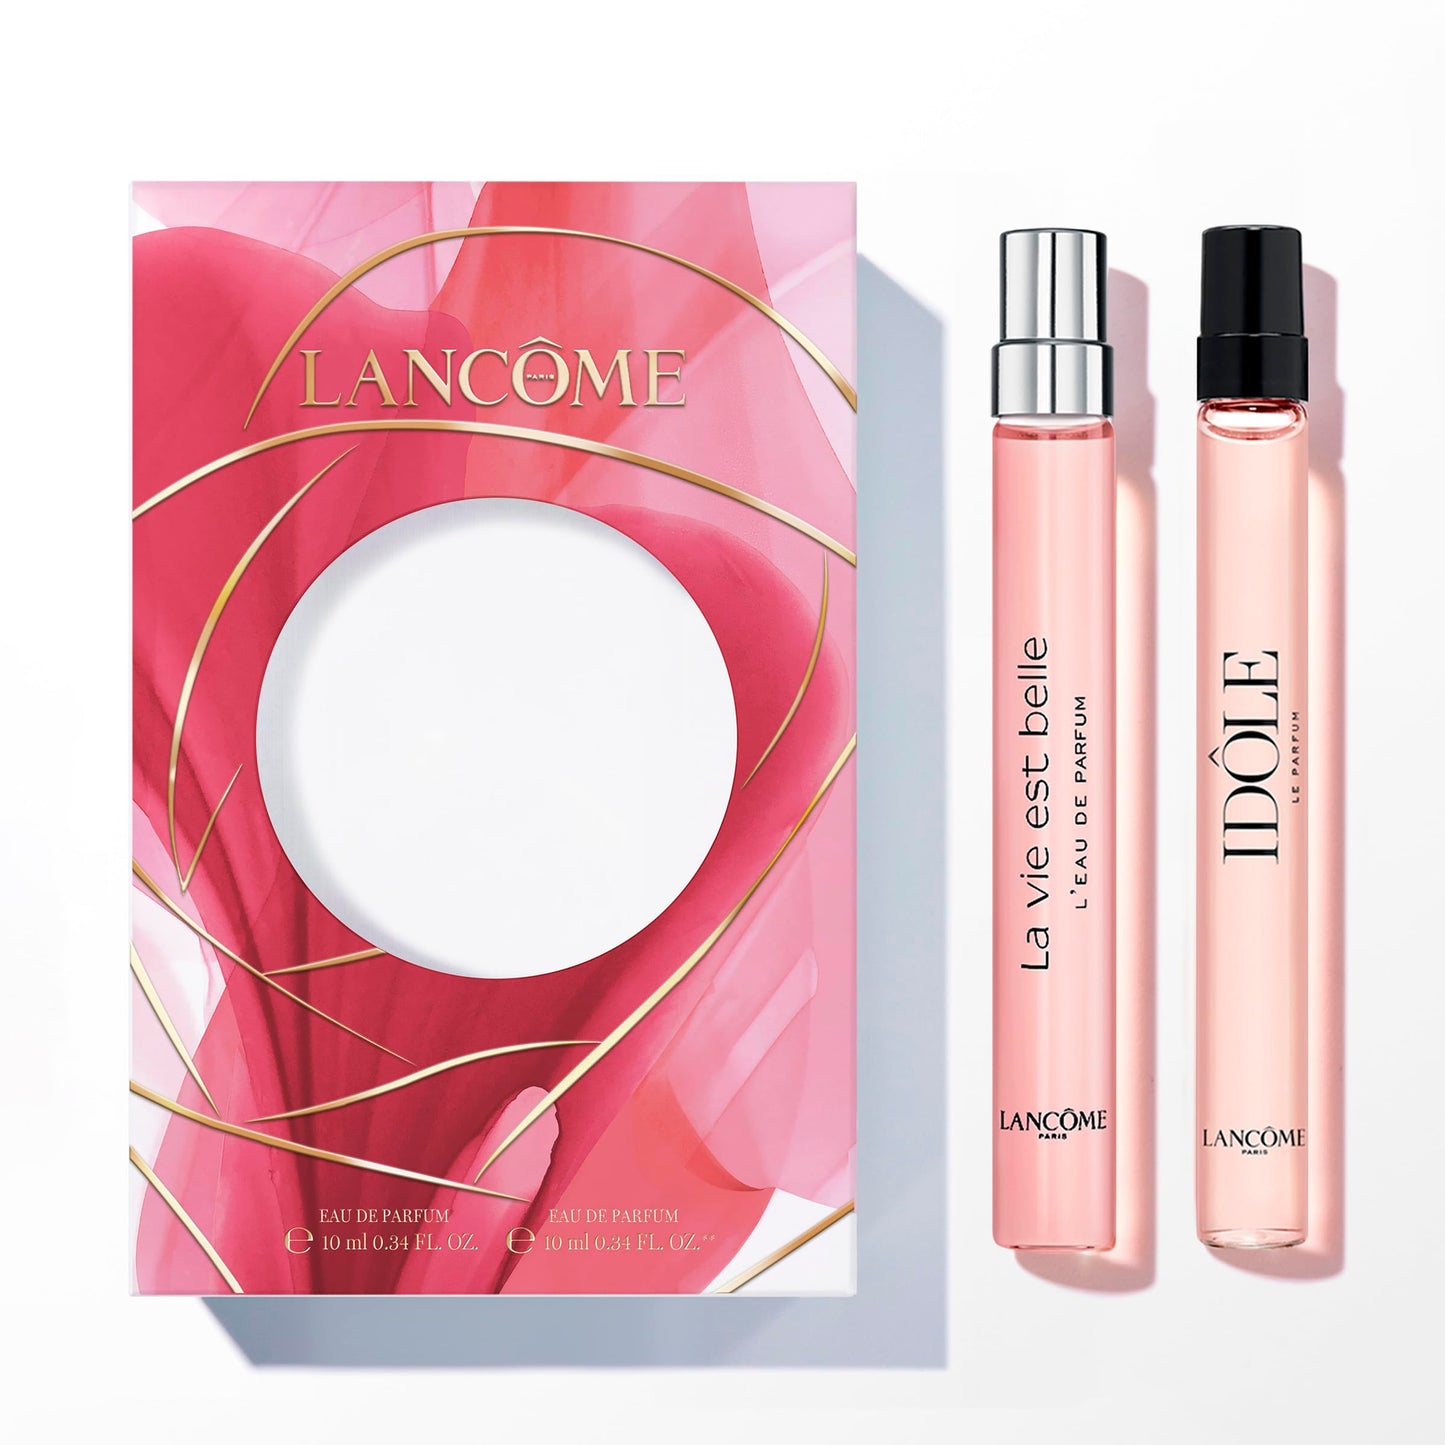 Lancôme Perfume Favorites Gift Set Bundle